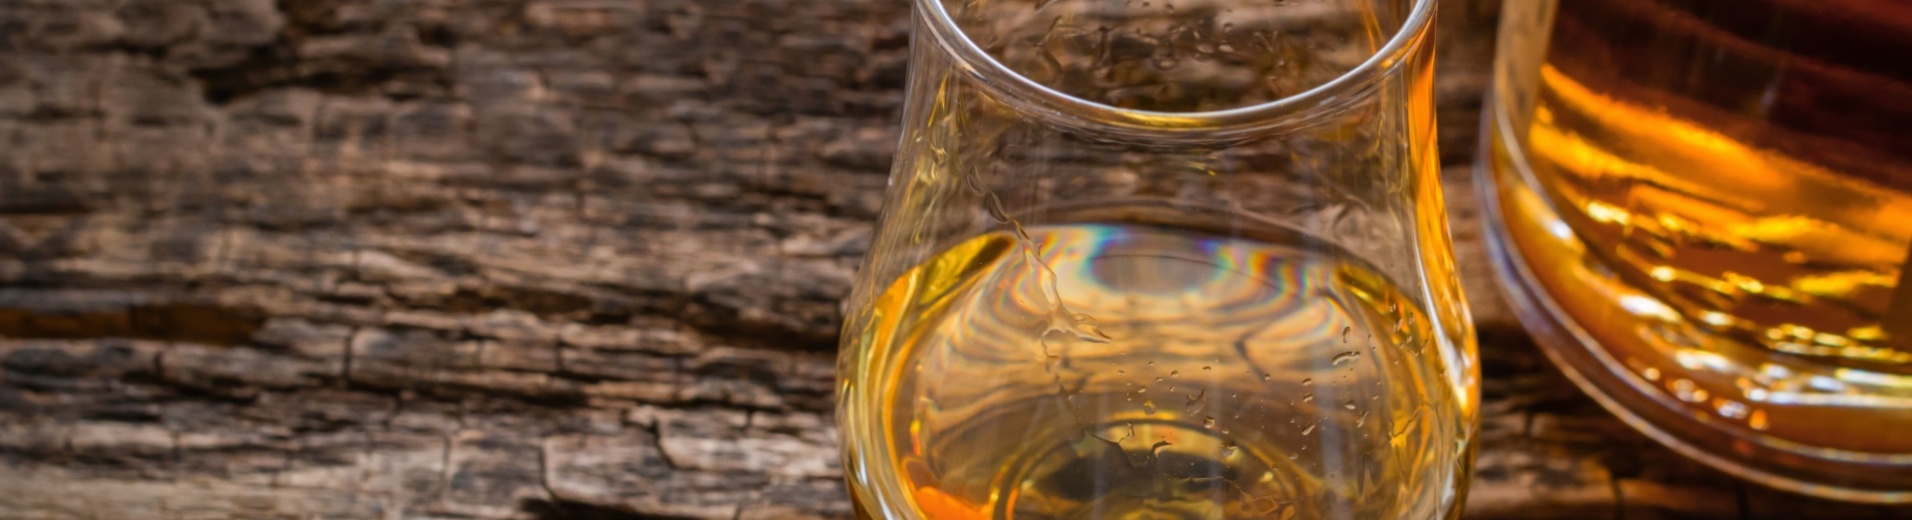 verre et bouteille de whisky sur une table en bois